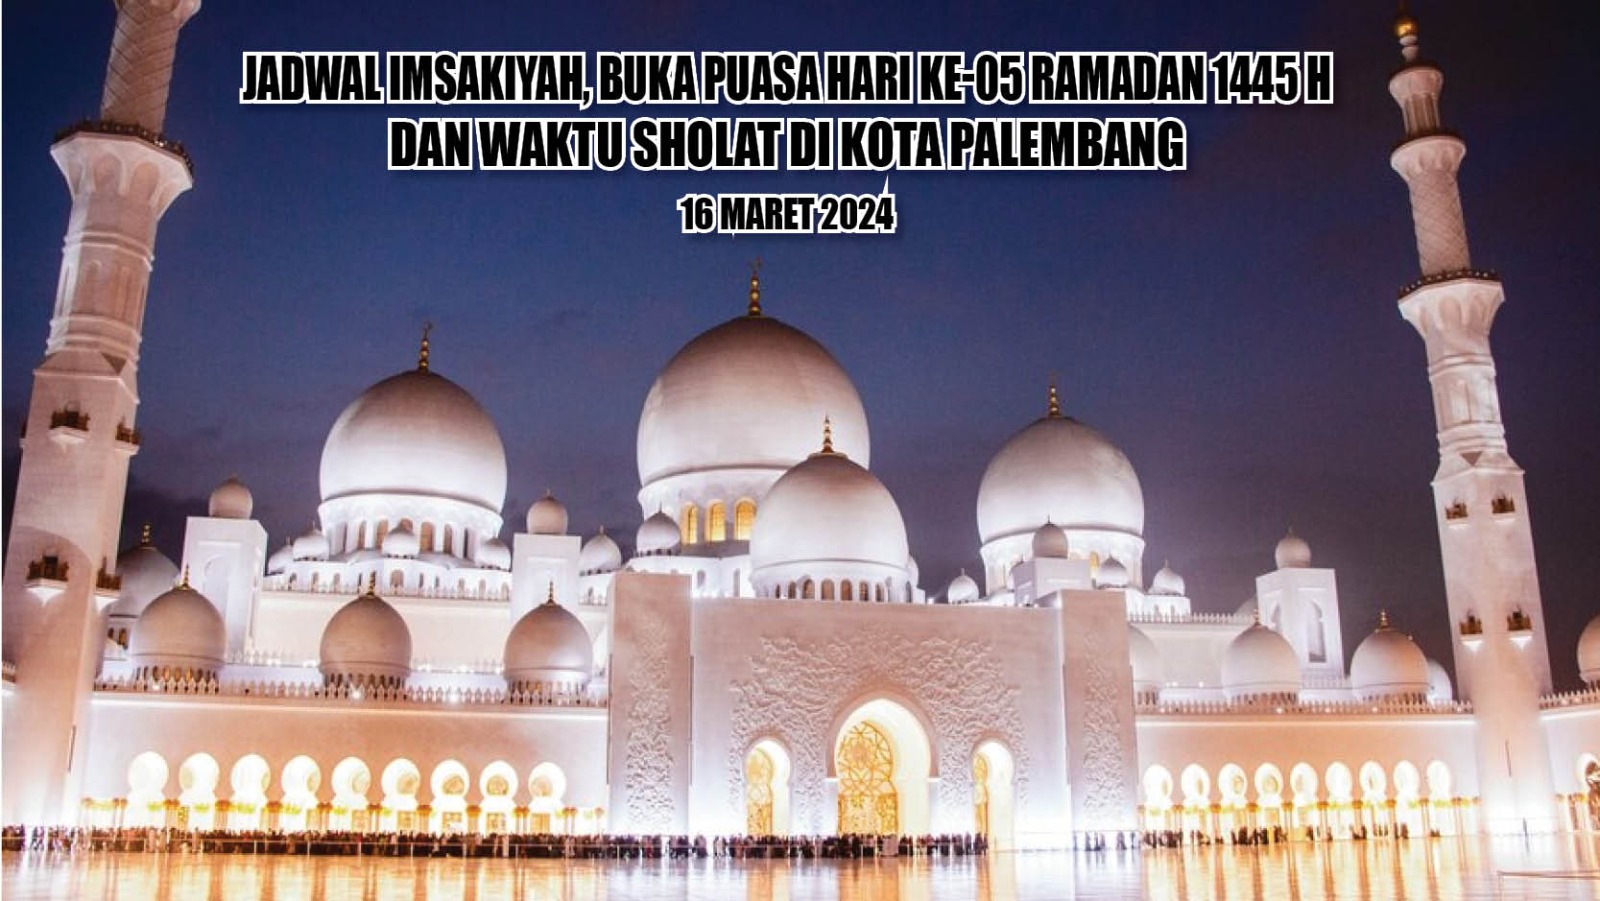 Terupdate! Ini Waktu Imsakiyah dan Buka Puasa Hari ke-05 Ramadan 1445 H Kota Palembang